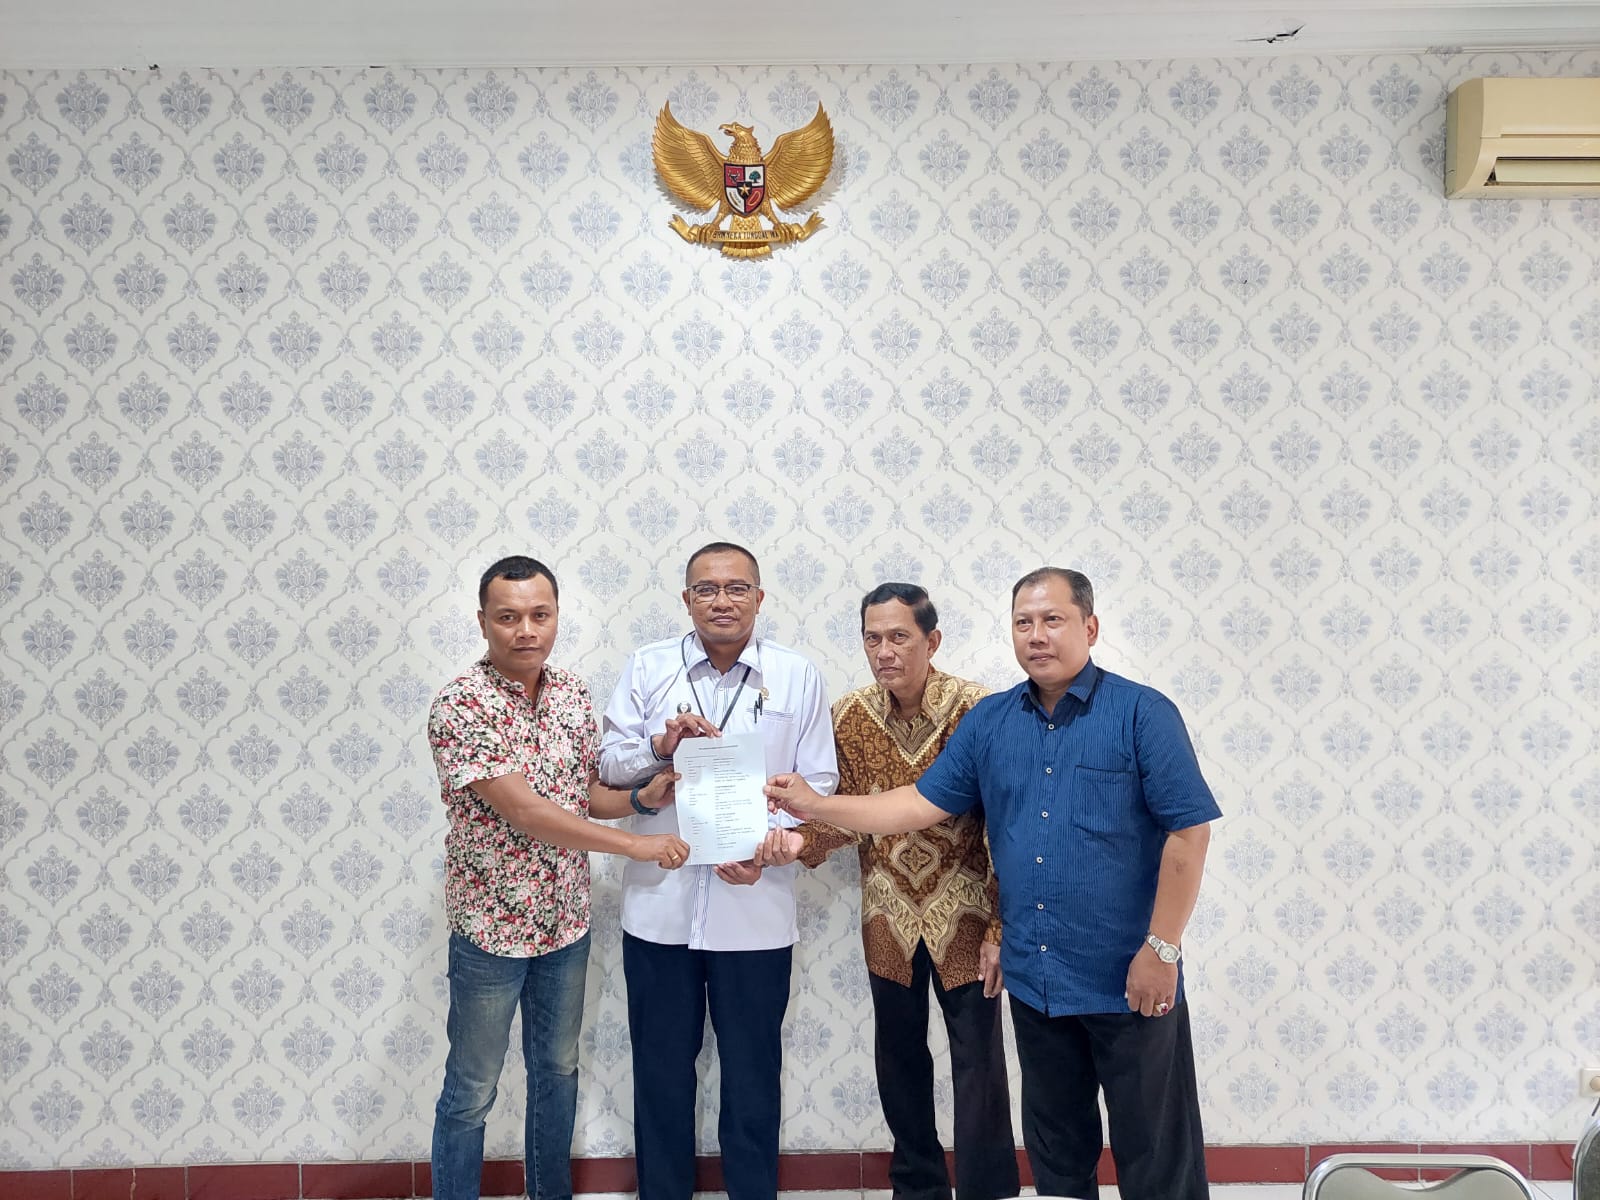 Mediasi Perkara Gugatan Sengketa Tanah Pengadilan Negeri Yogyakarta Berhasil Damai